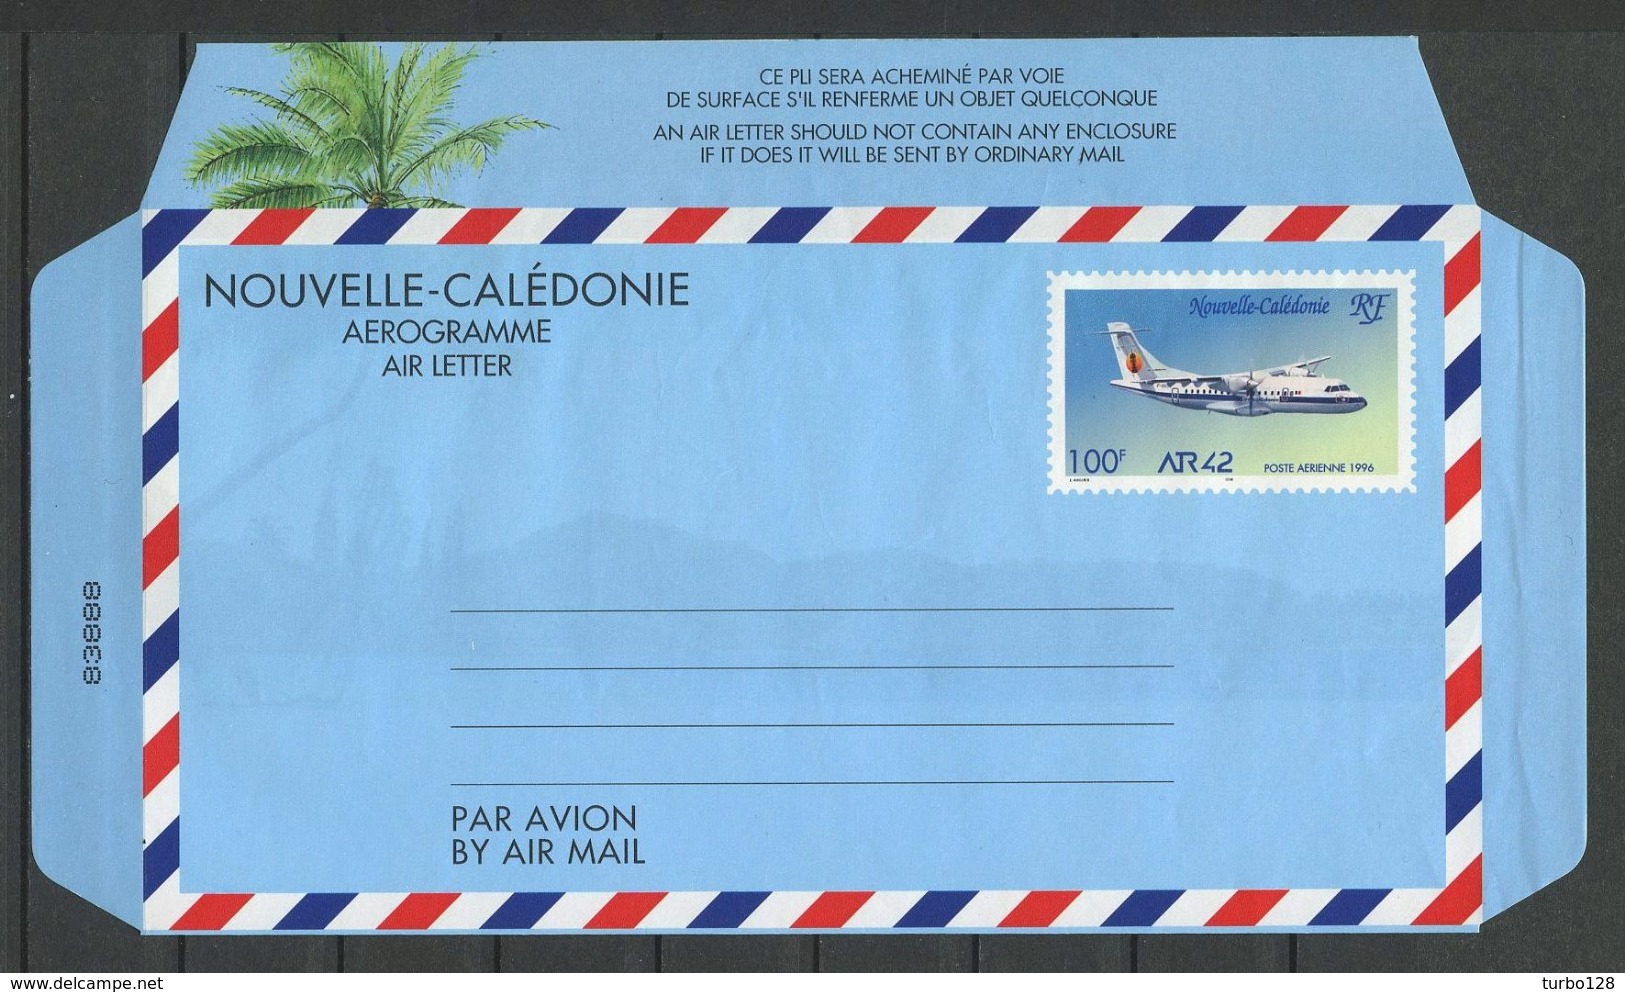 CALEDONIE Aérogramme 1996 N° 14 ** Neuf MNH Lègère Froissure Languette Droite Cote 10 &euro; Avion ATR 42 Planes Transpo - Aerogramas